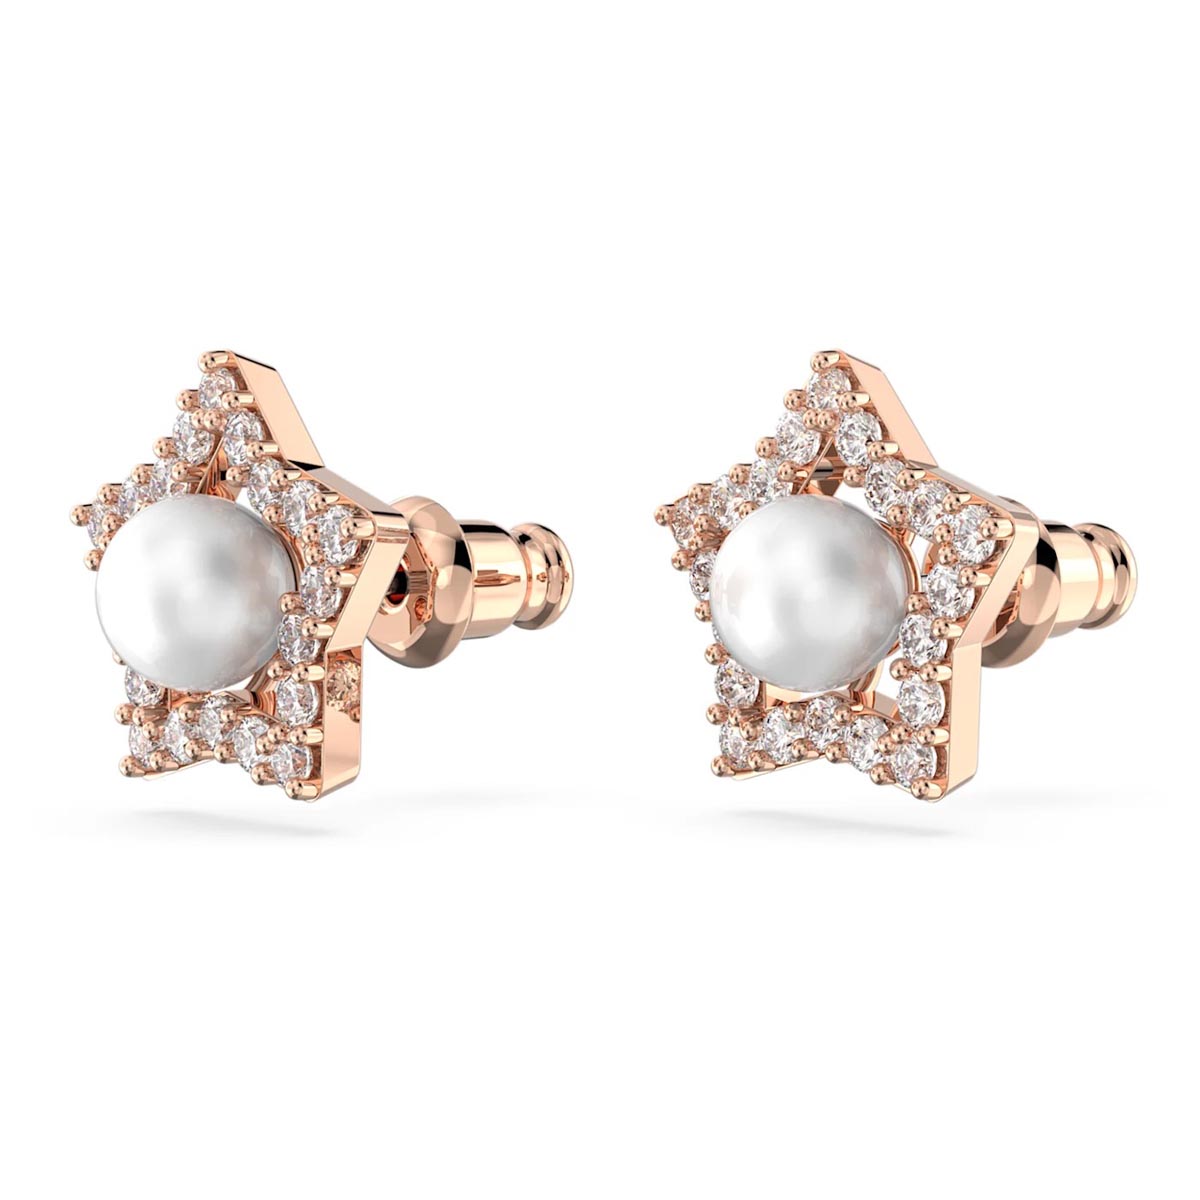 Swarovski Crystal Stella Pearl Star Stud Earrings